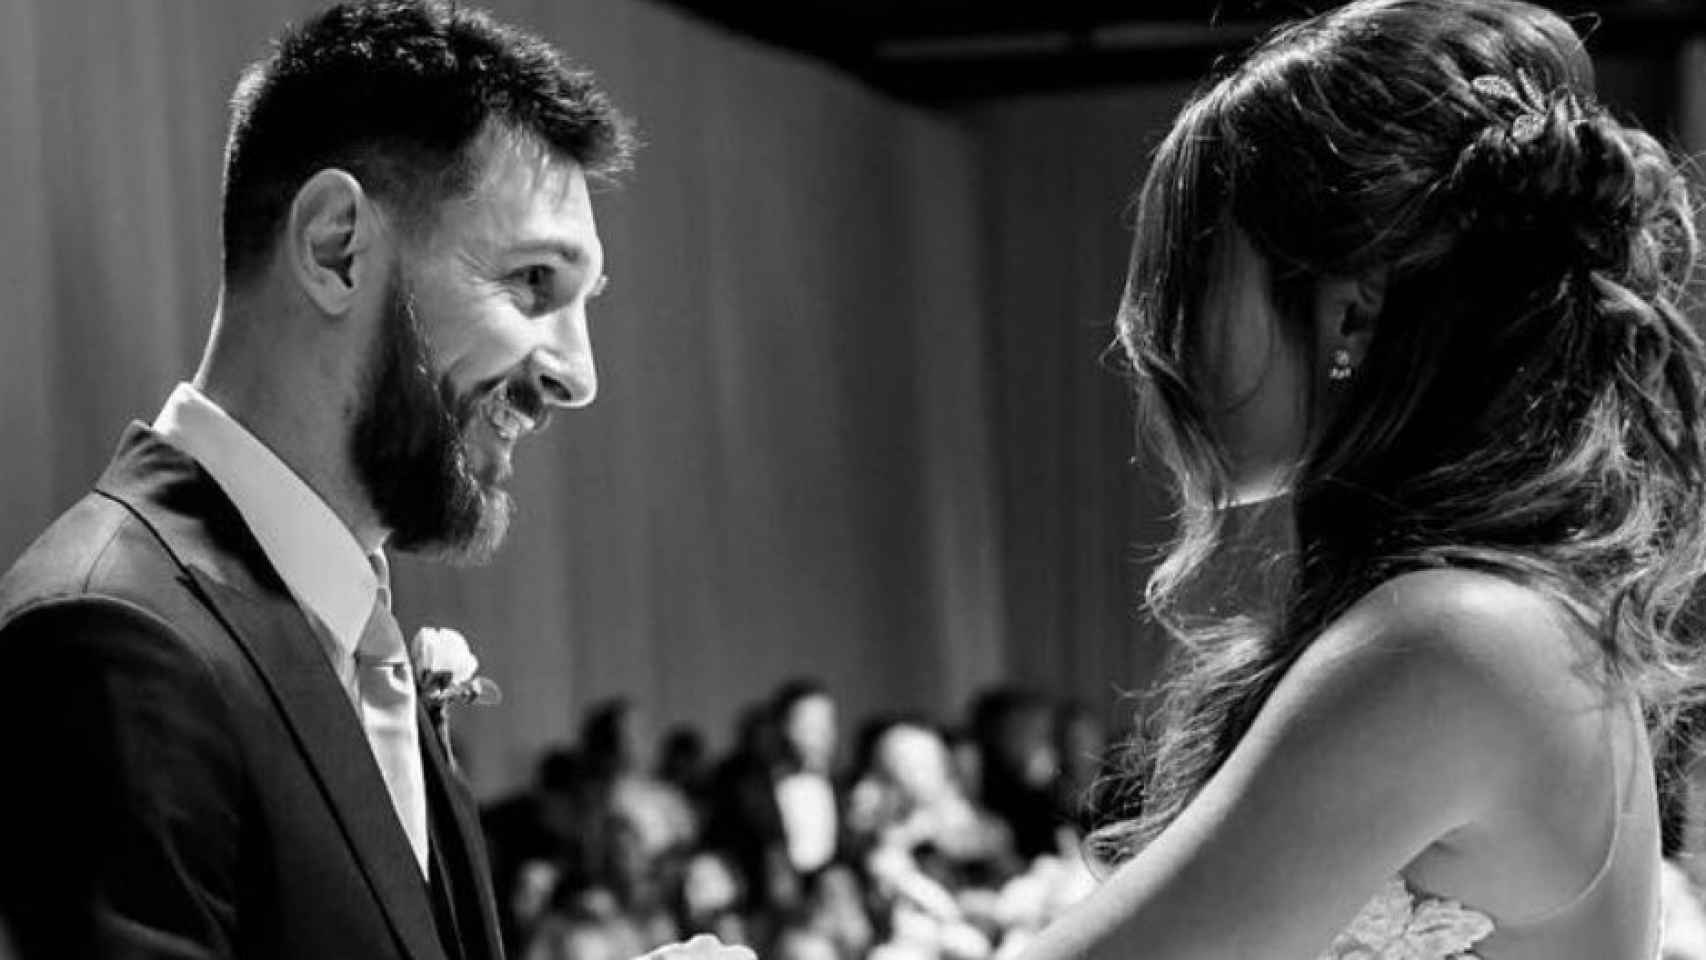 Antonella Roccuzzo y Leo Messi en su boda / INSTAGRAM